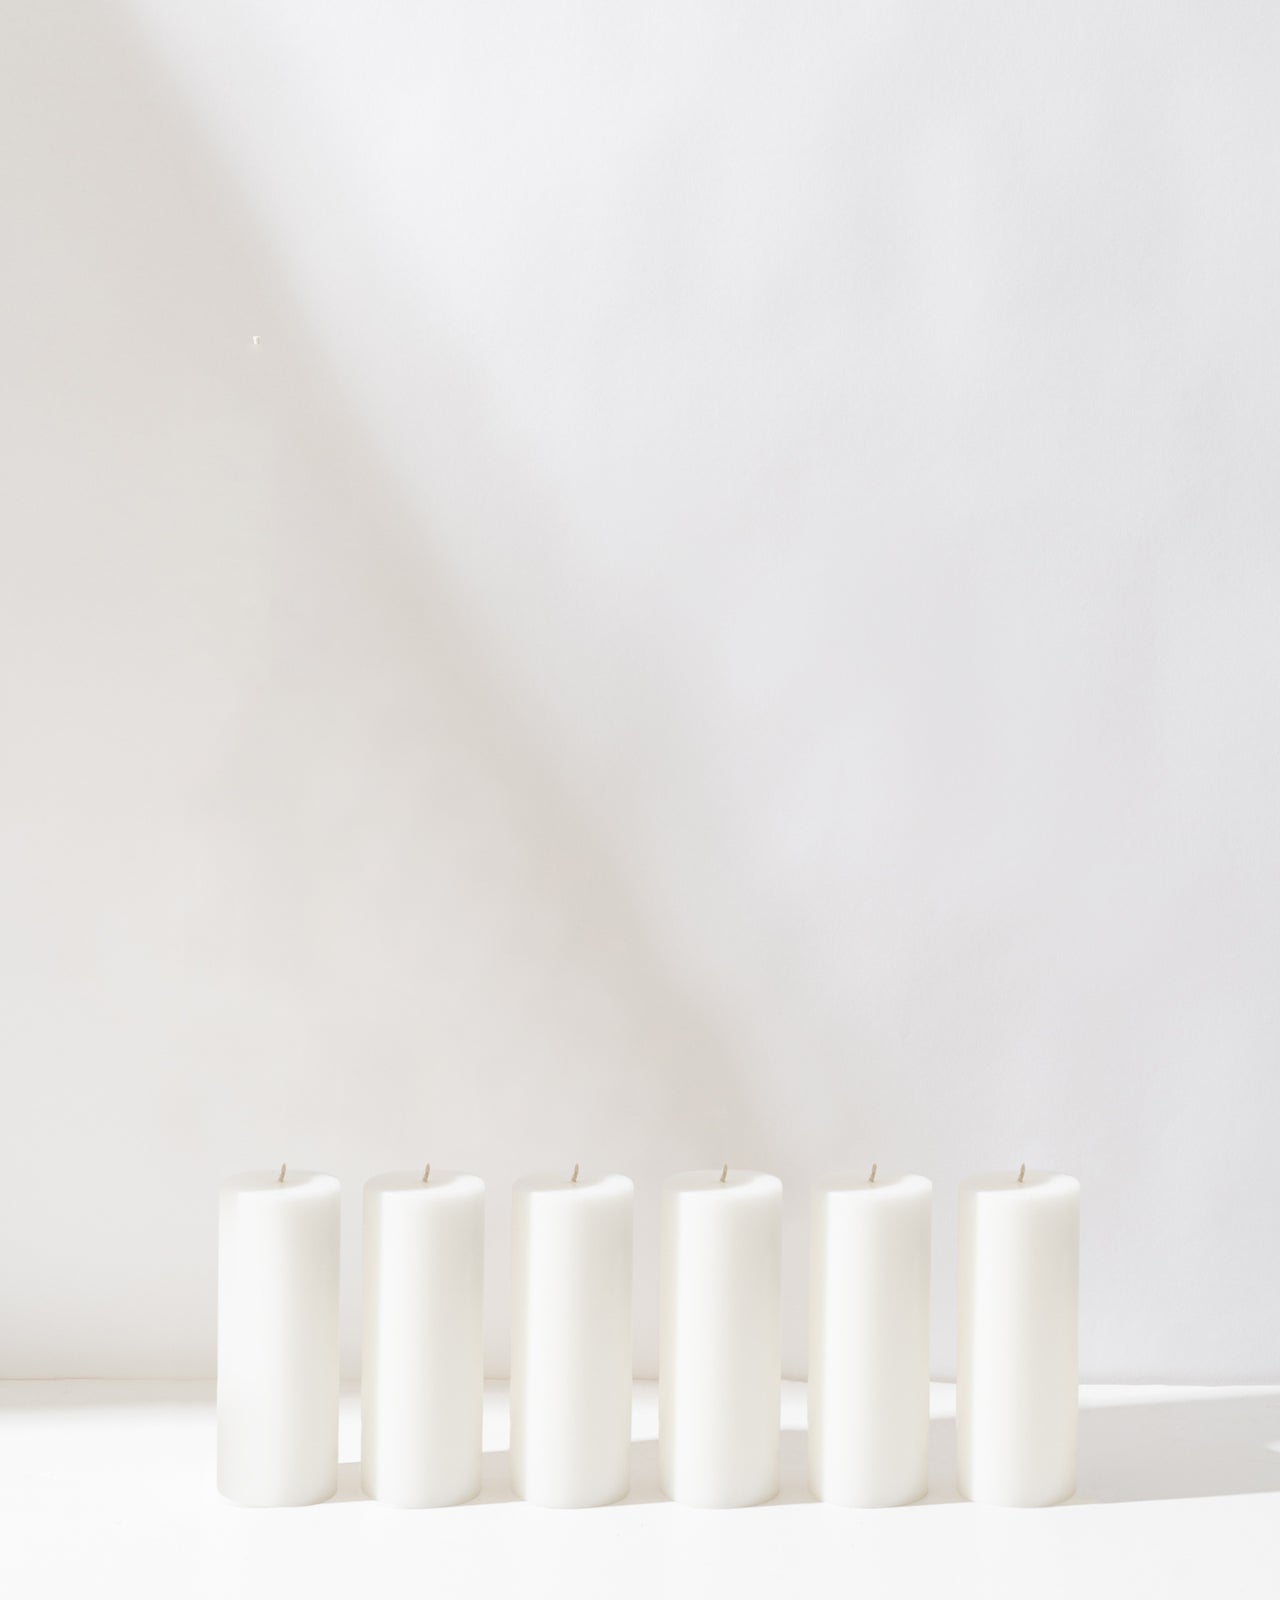 15cm Pillar Bundle (10 candles)